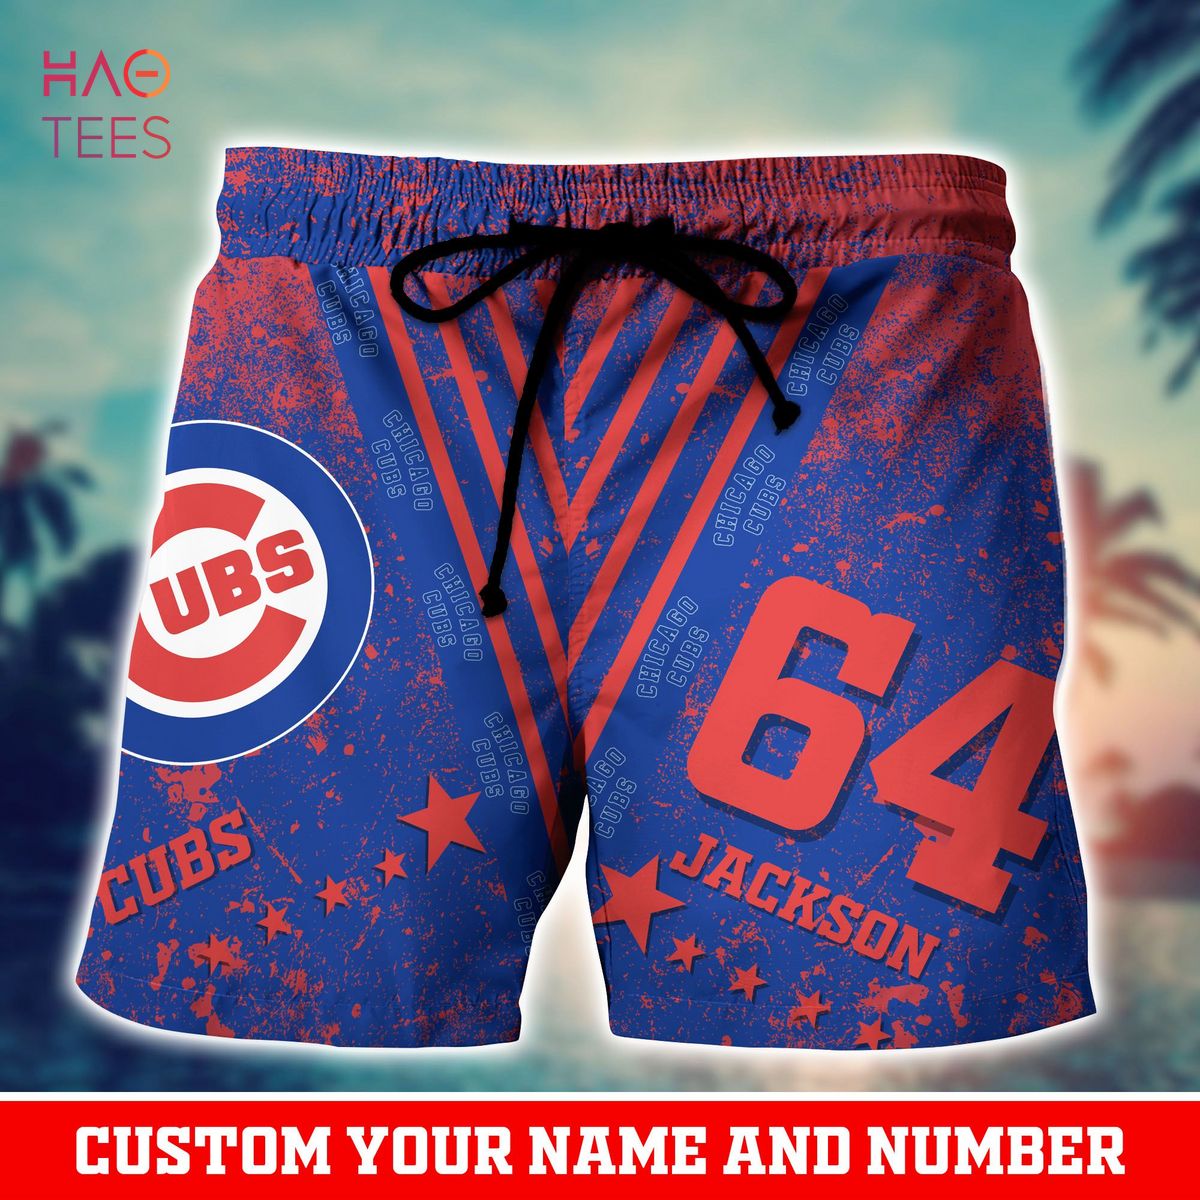 Chicago Cubs MLB Hawaiian Shirt For Men Women Gift For Fans - YesItCustom